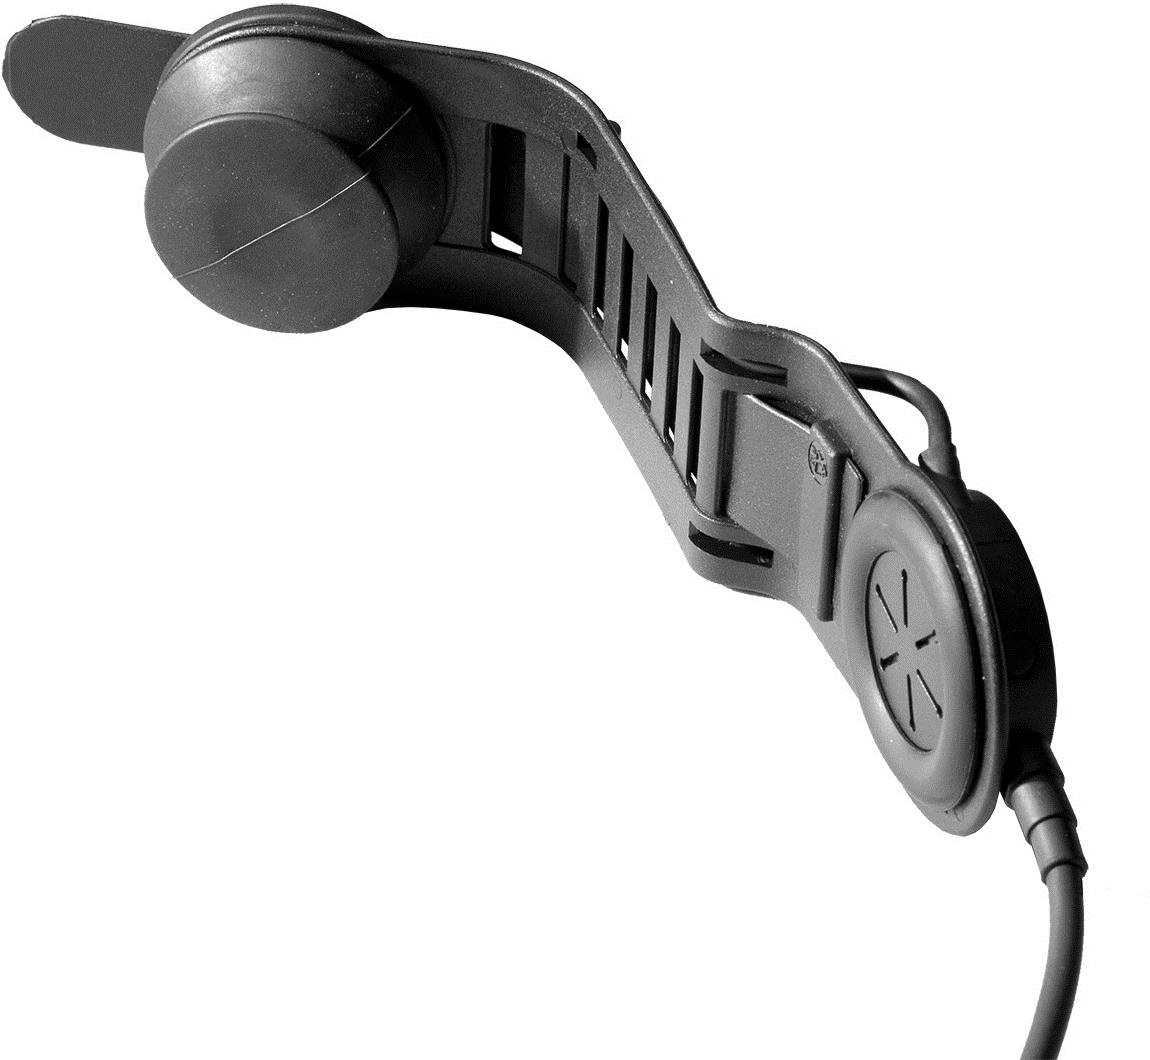 Savox HC-1 Helmgarnitur, Schädeldeckenmikro mit langem Bügel, IP56, Spiralkabel, Nexus 1 Hörer (verbessert), vibrationsempfindliches Knochenschall-mikrofon, mit Nexus Schnelltrennstecker zum Anschlusseiner PTT-Einheit mit Funkgerätestecker (bitte sep